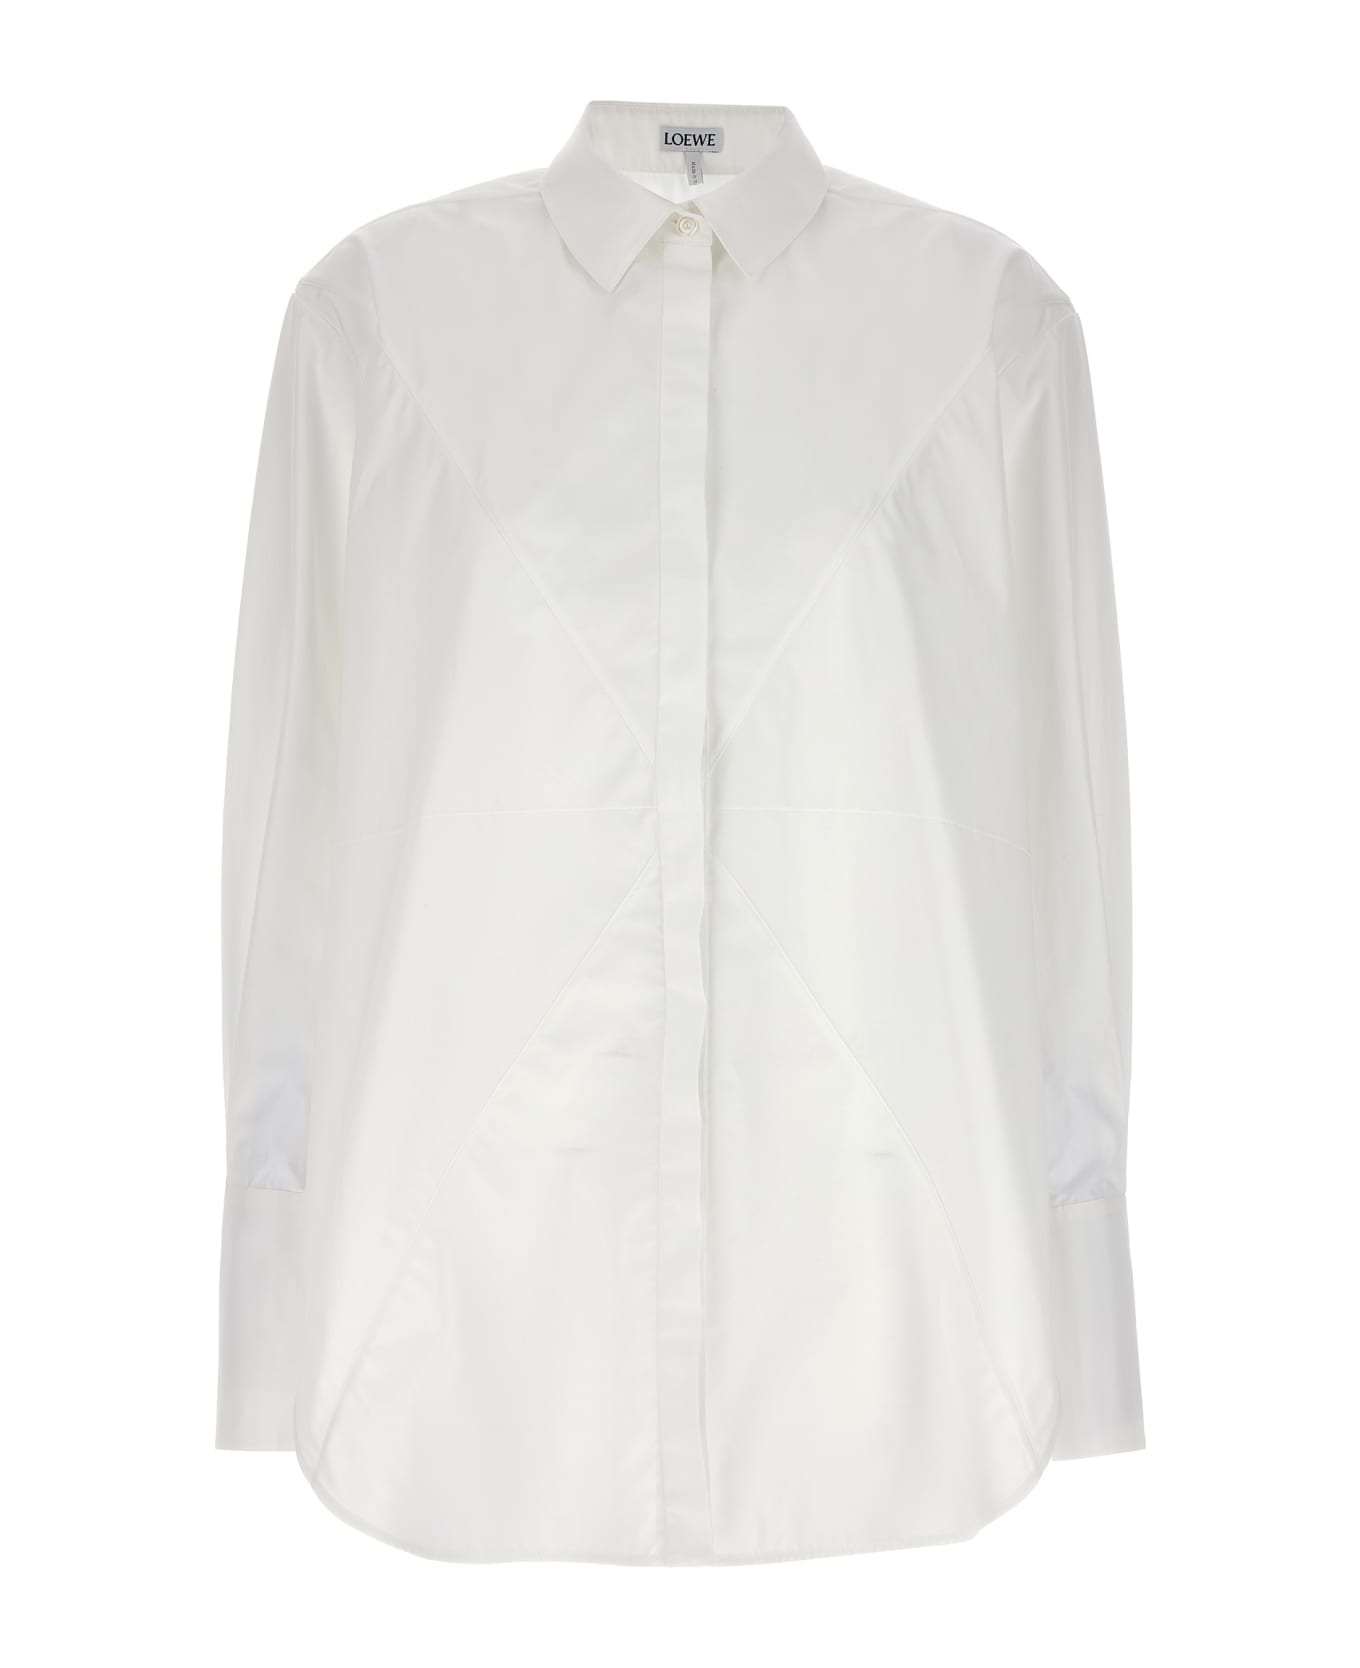 Loewe 'puzzle Fold' Shirt - White